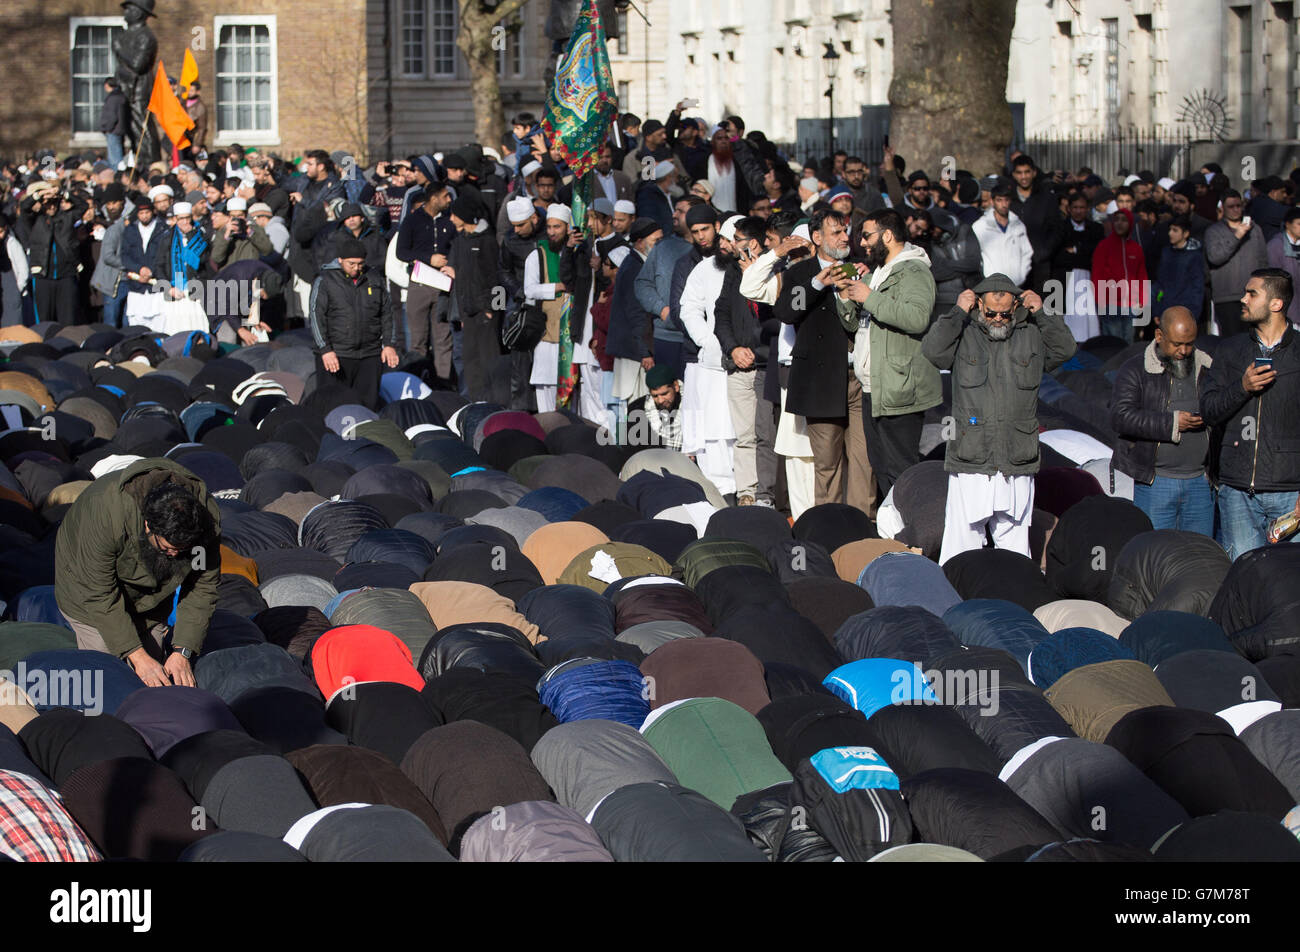 Les musulmans prient alors que des milliers de musulmans se rassemblent dans une manifestation devant Downing Street dans le centre de Londres, appelant aux valeurs musulmanes et condamnant les caricatures de Mohammed par la publication française Charlie Hebdo. Banque D'Images